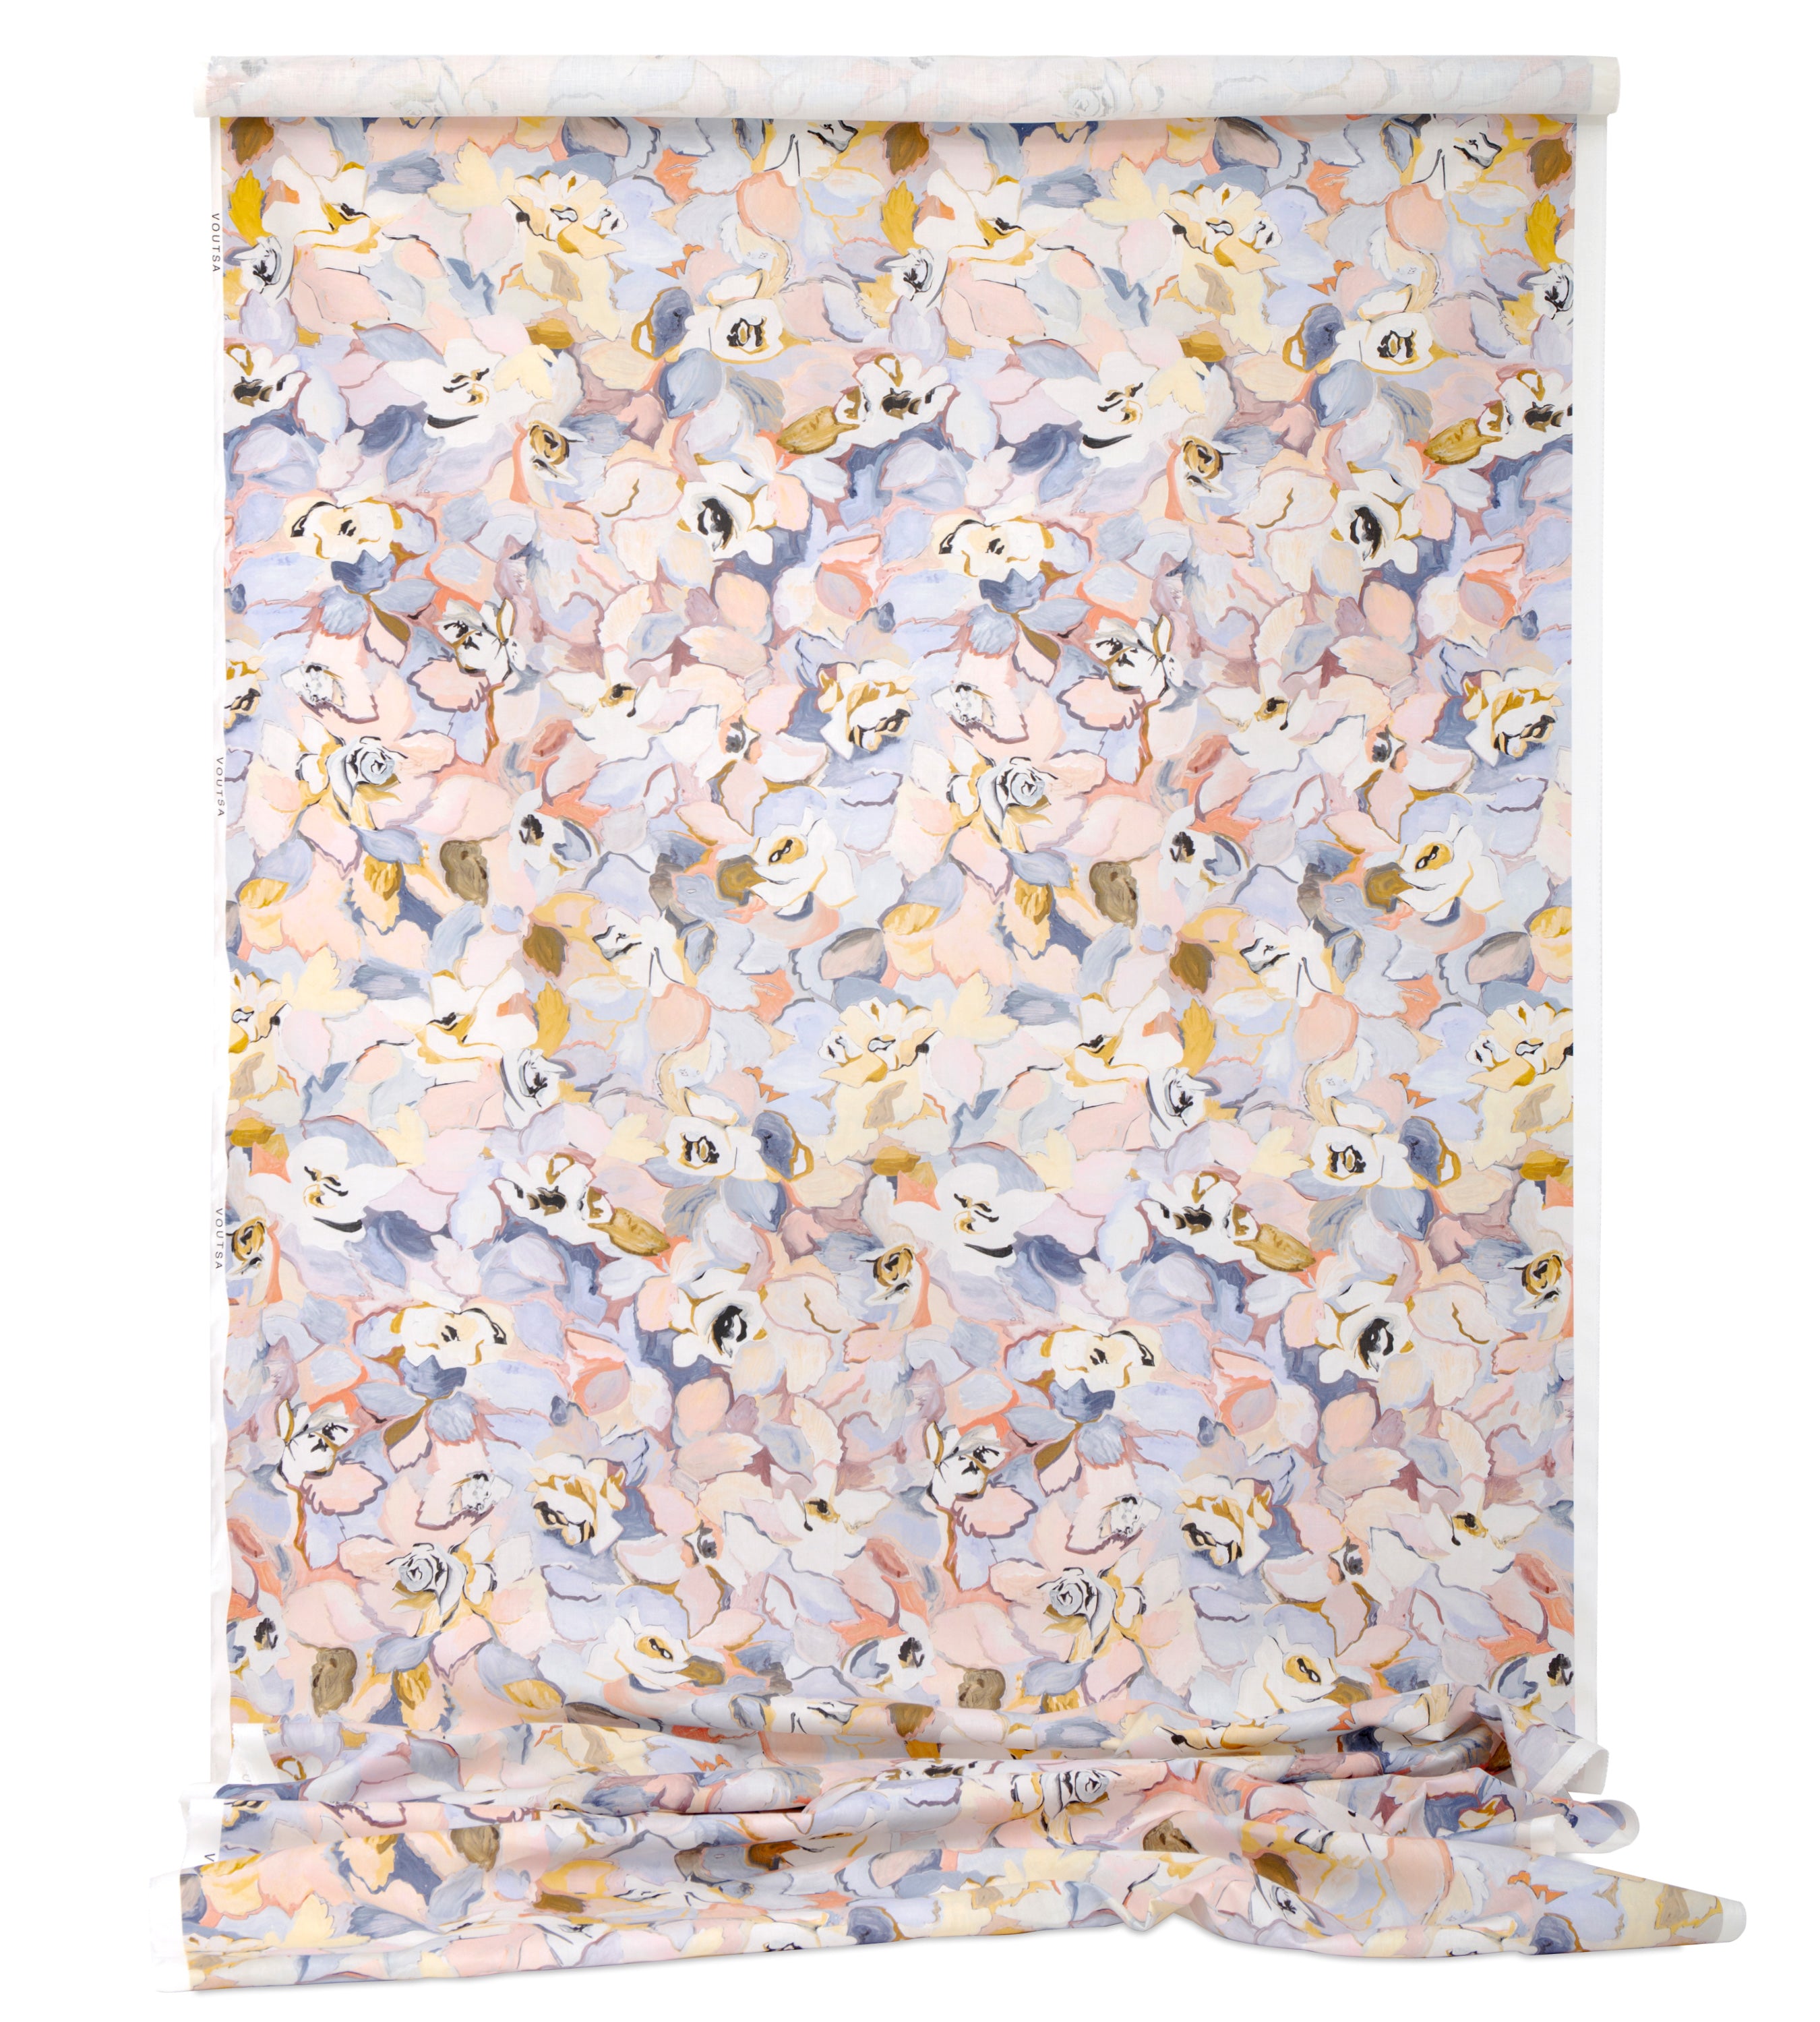 Cotton linen #10 – My Fabric Dresser